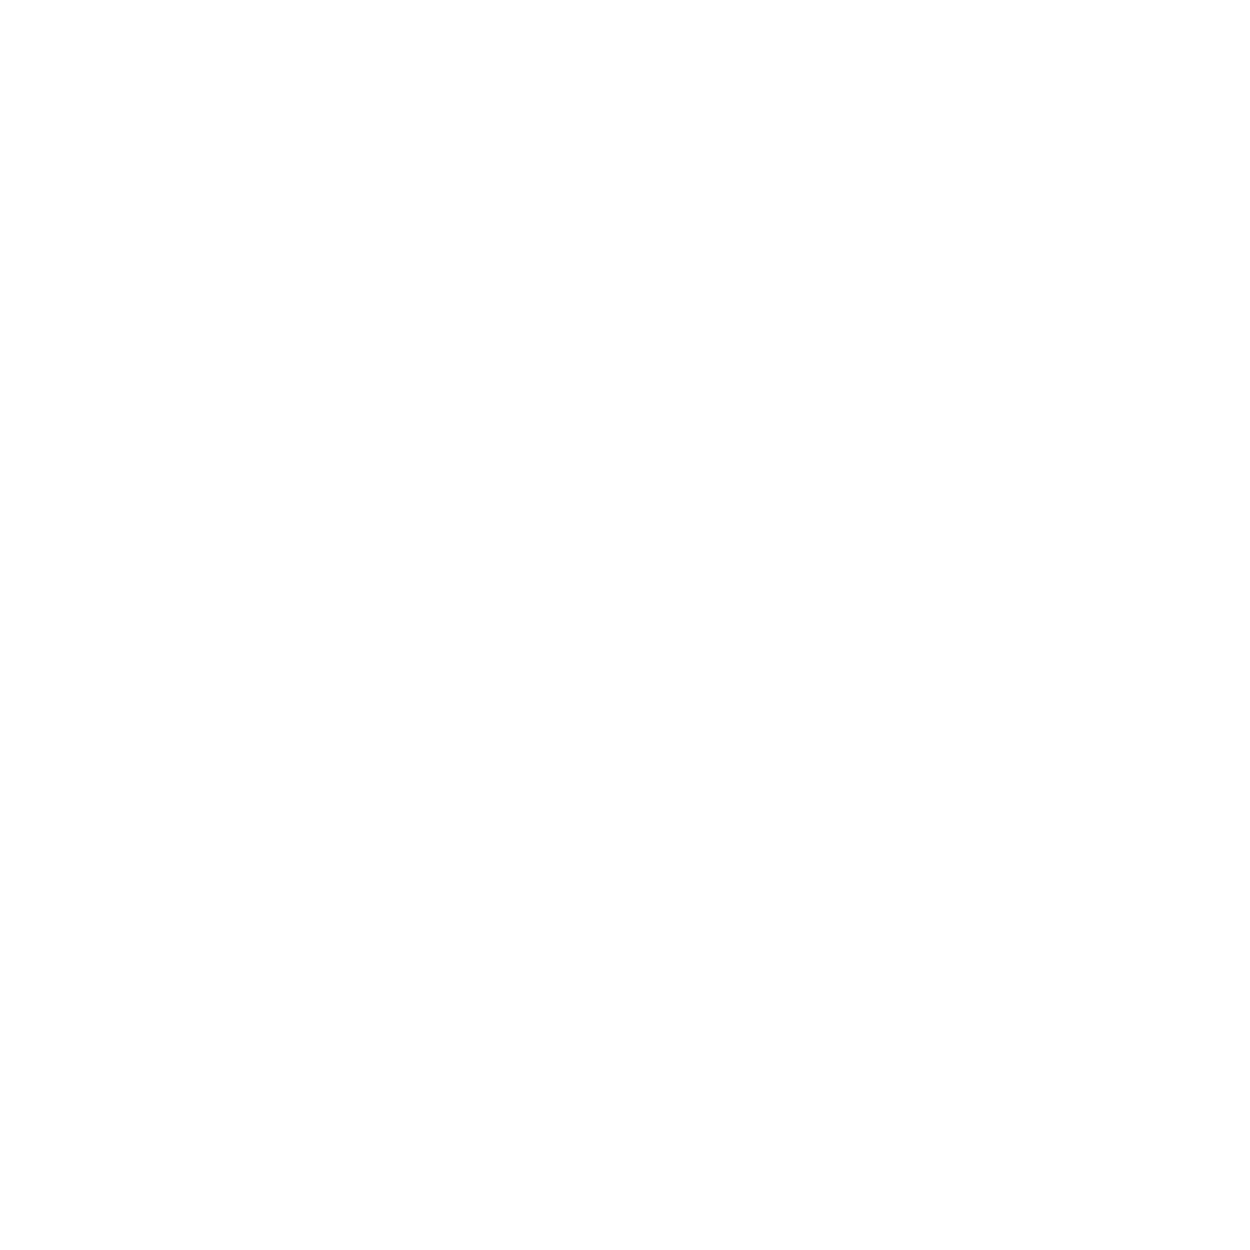 Isaiah 62 Declaration